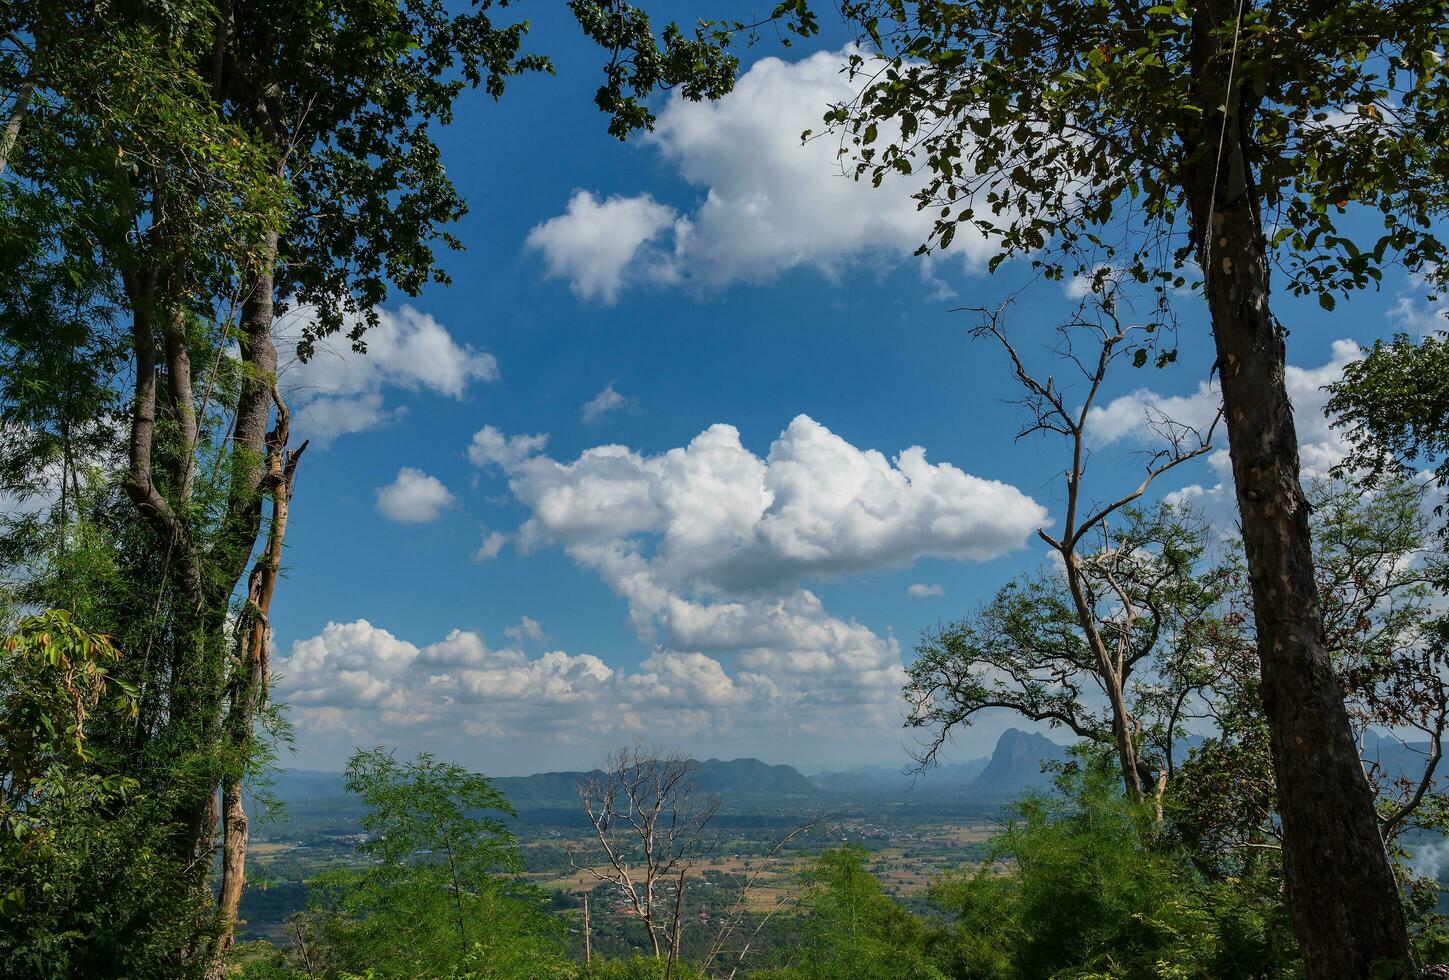 bellissimo scenario Visualizza a partire dal phu kradueng montagna nazionale parco nel loei città thailandia.phu kradueng montagna nazionale parco il famoso viaggio destinazione foto